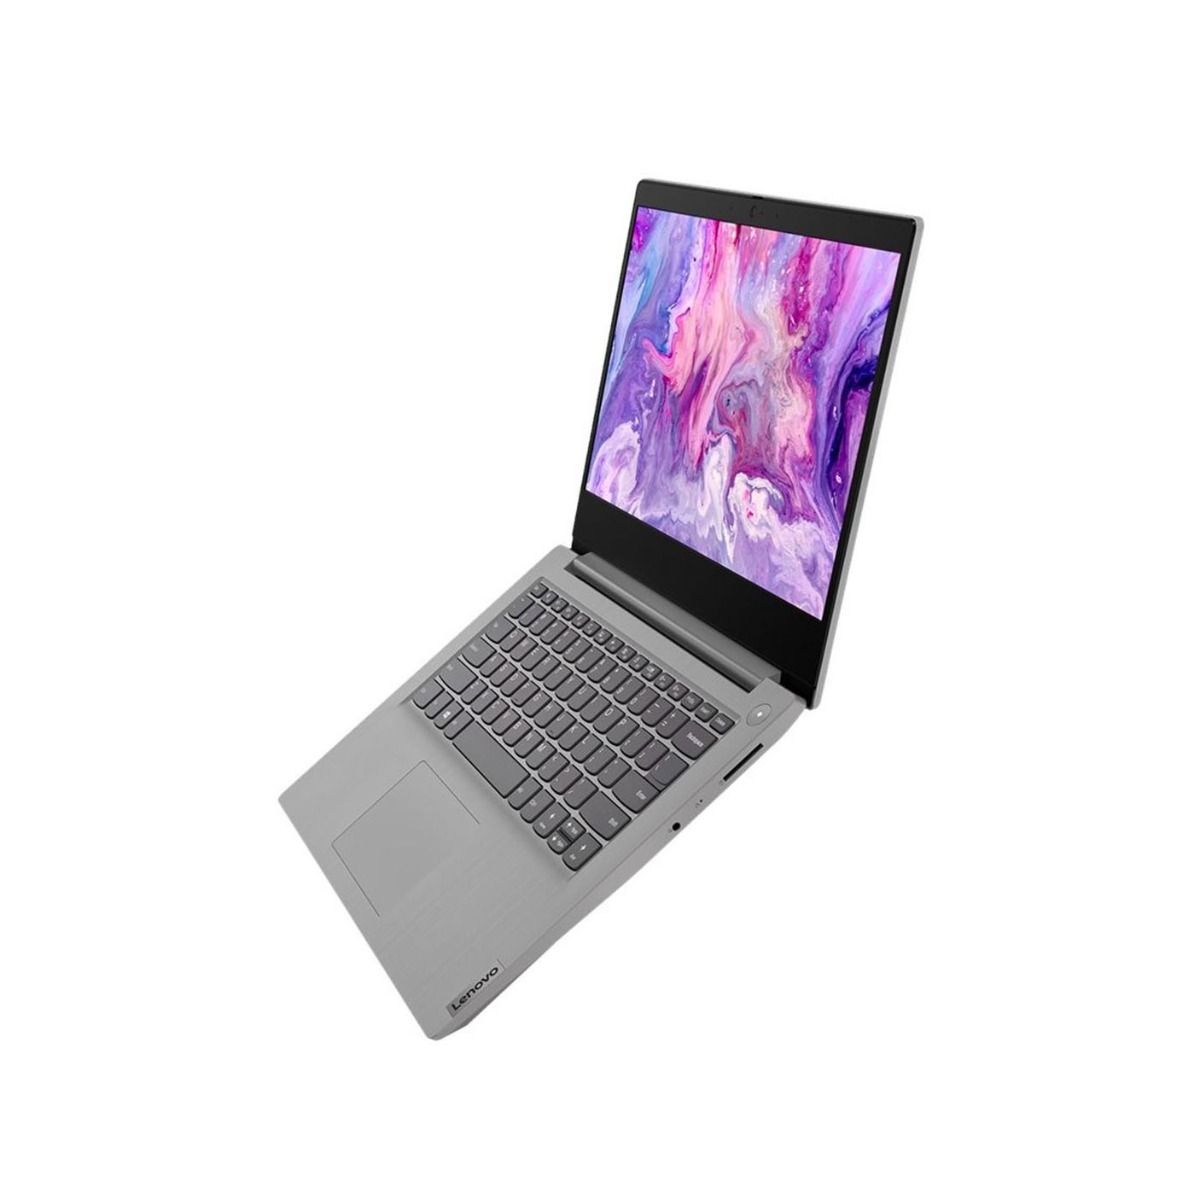 Lenovo IdeaPad 3 14ADA05 Laptop 14" FHD AMD Ryzen 3 3250U 4GB 128GB